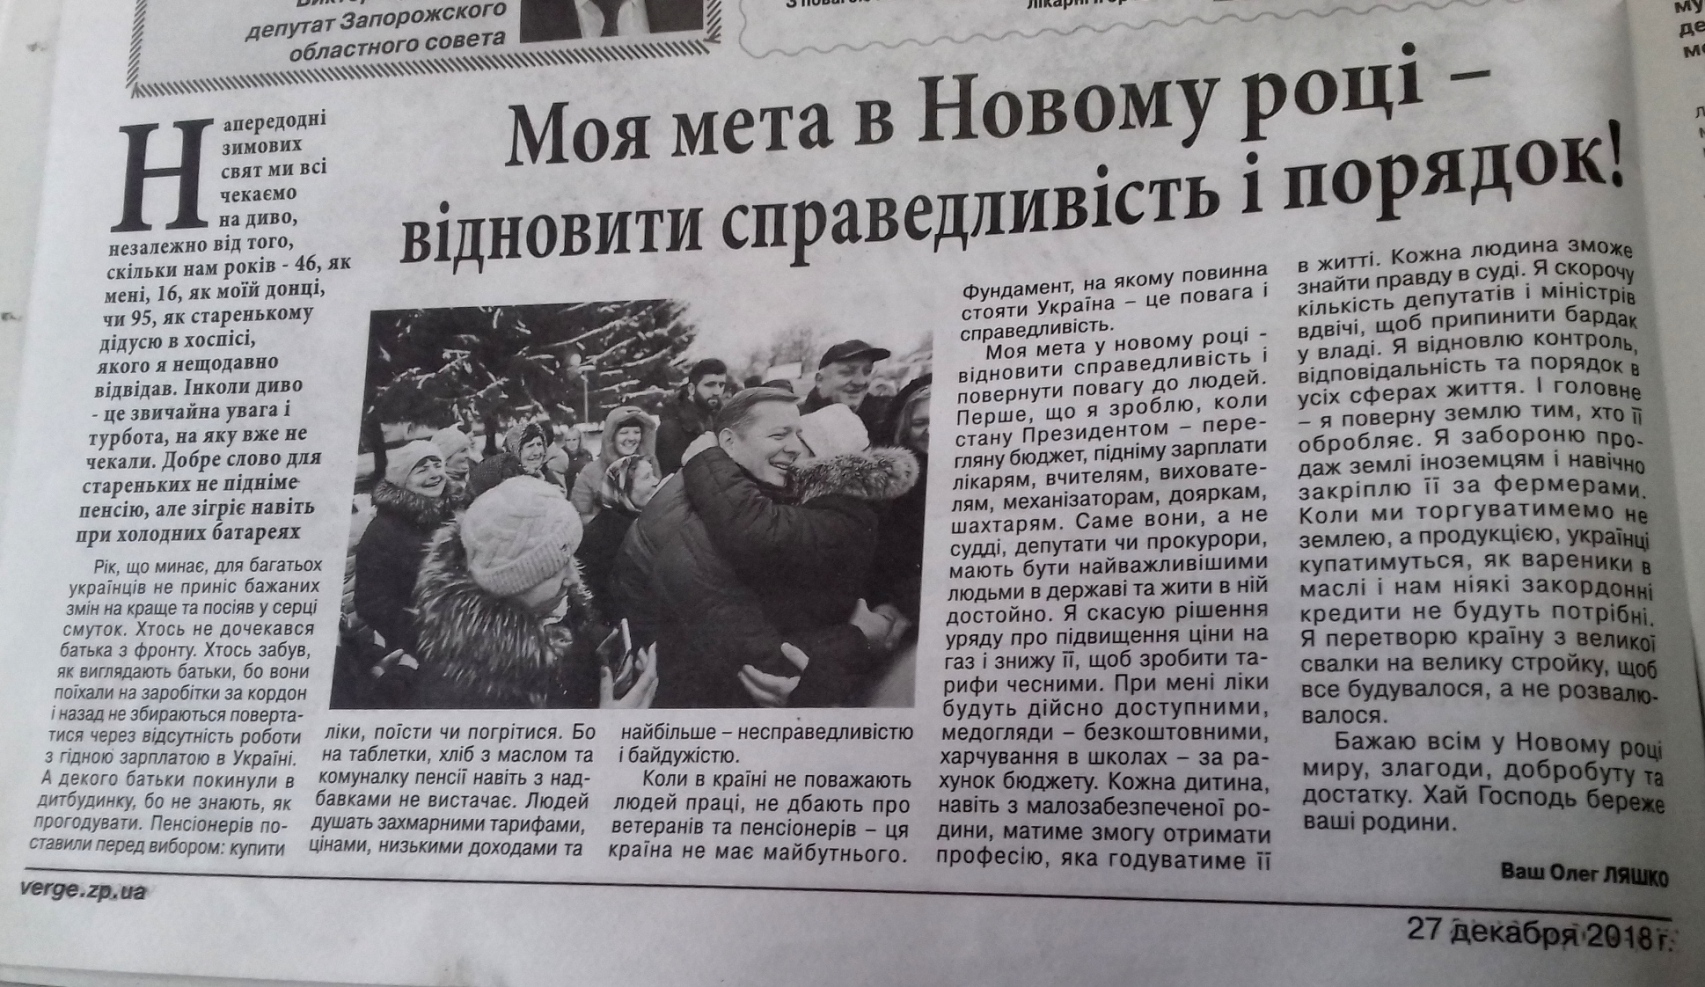 news 14 01 2019 Zaporizhzhia publikaciya v gazeti Verzhe 5